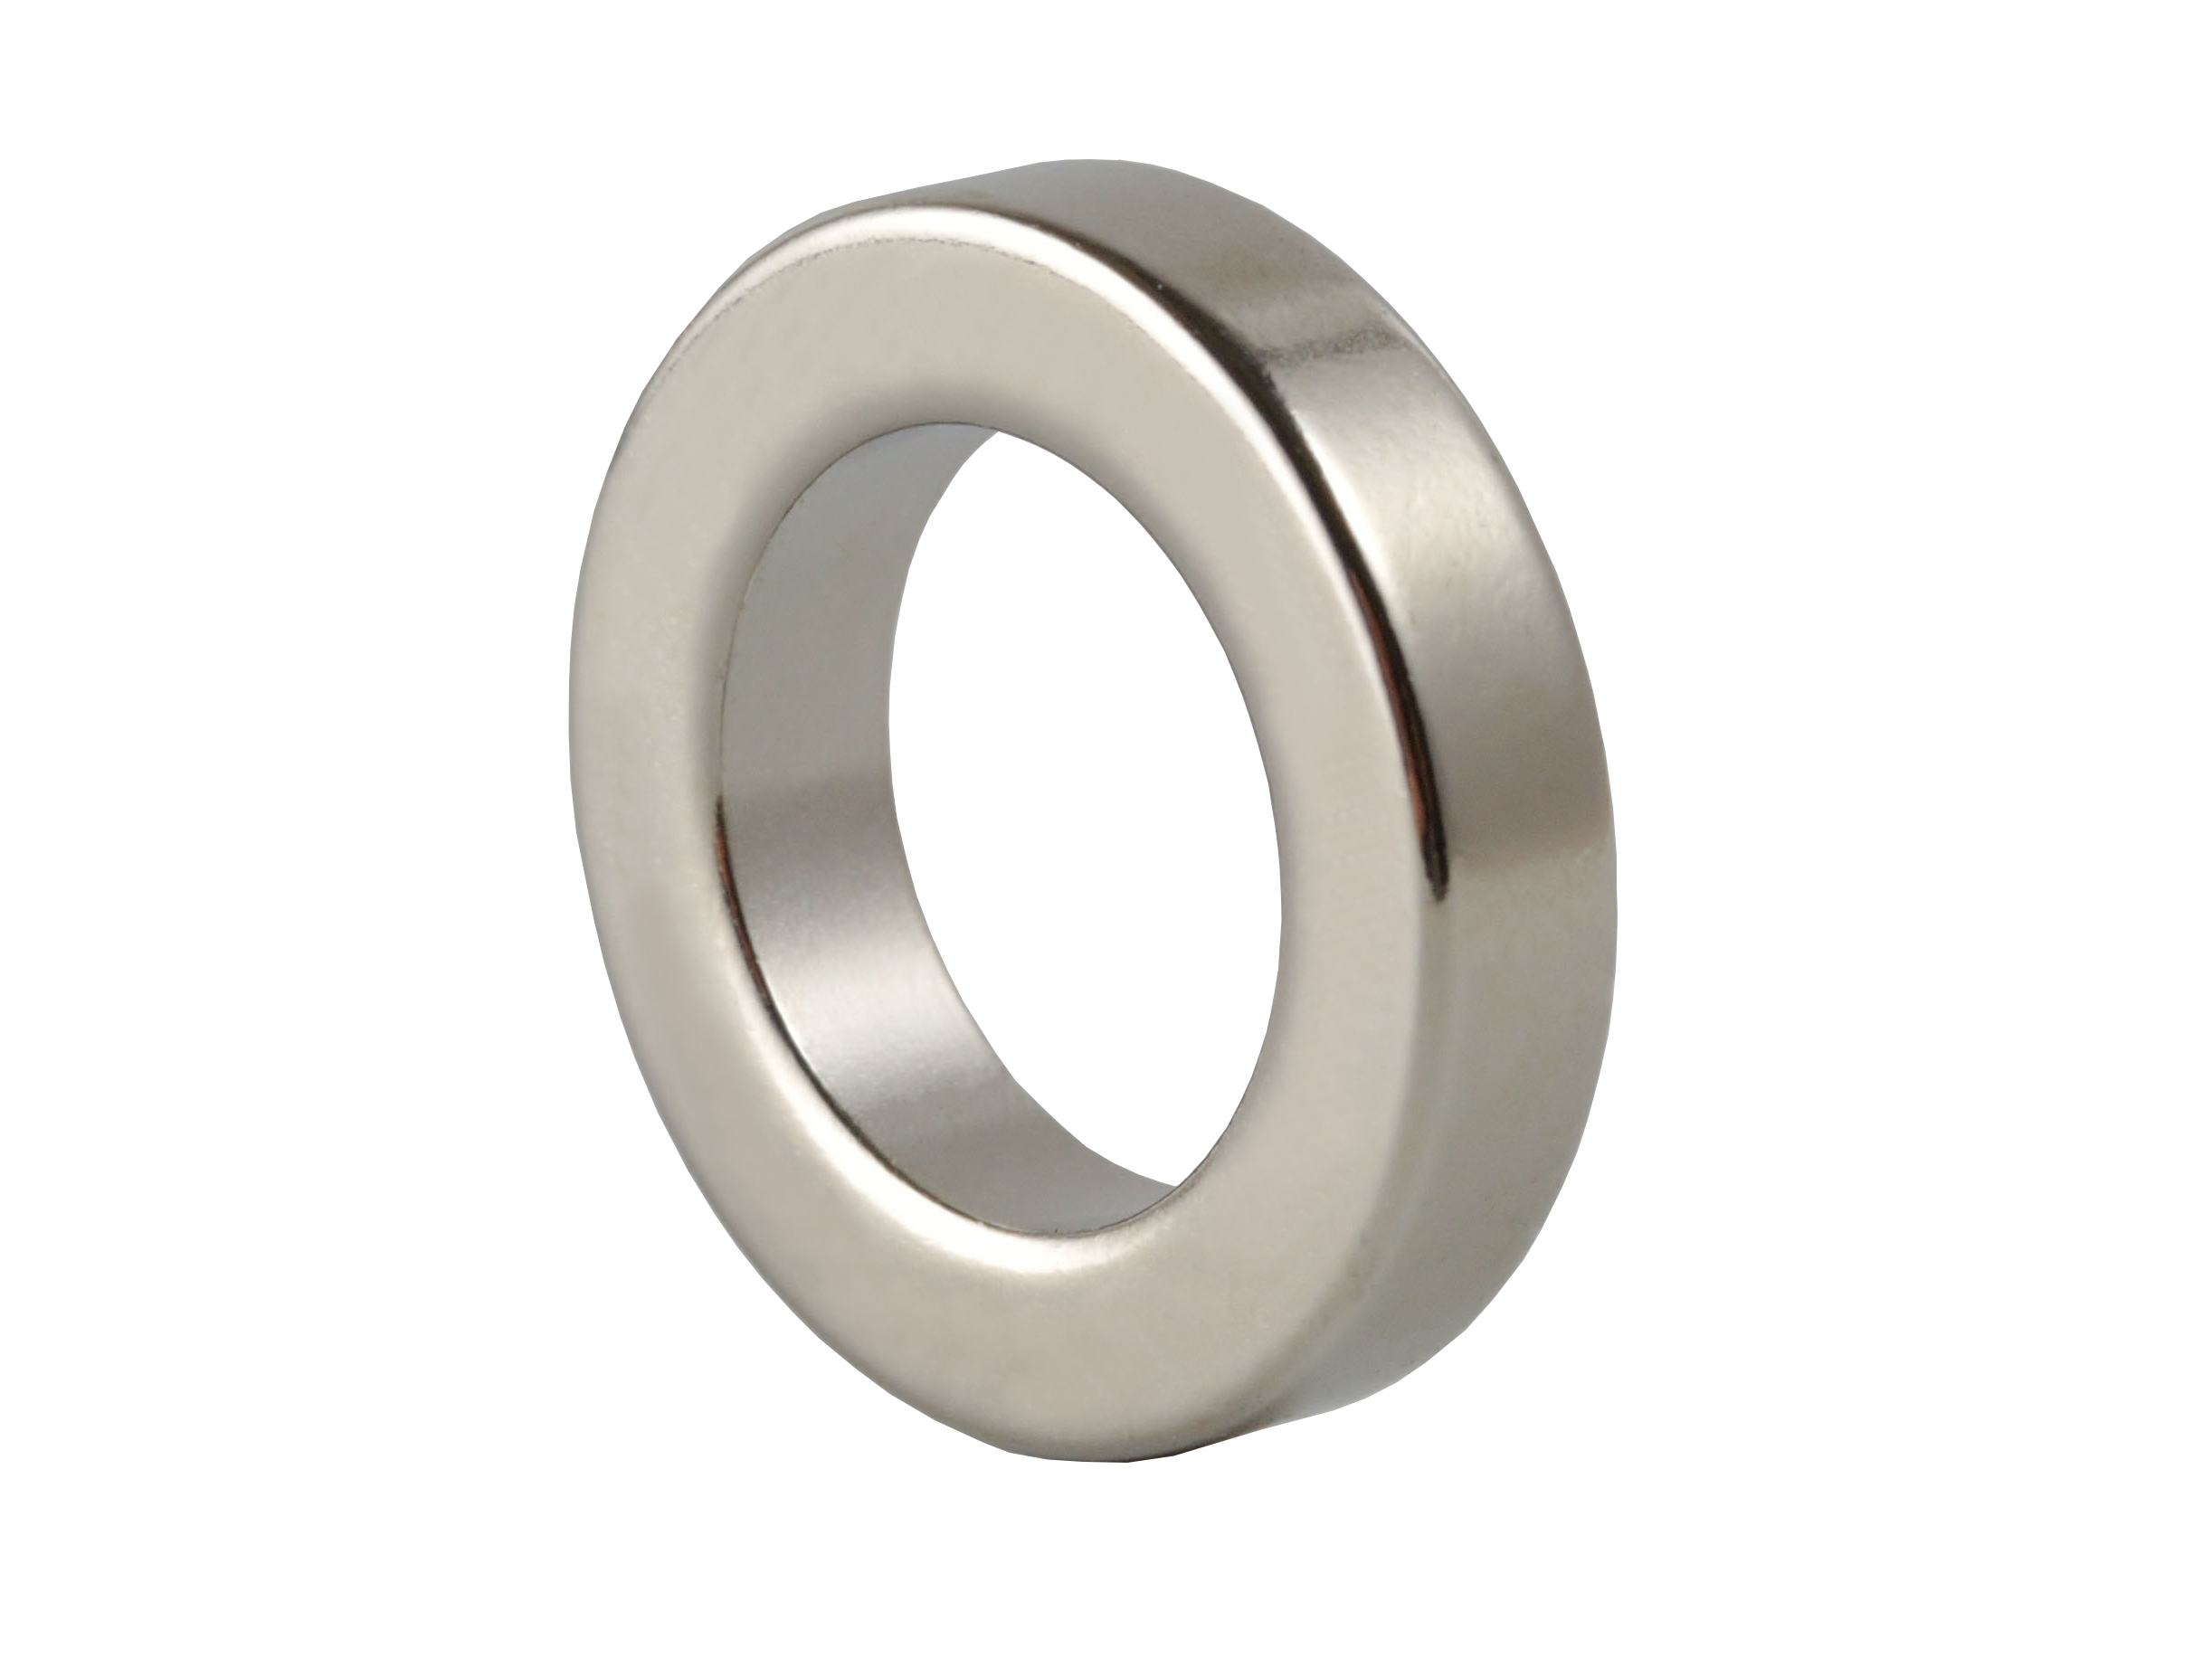 Ring‑Shaped Neodymium Magnet (NOR405) 